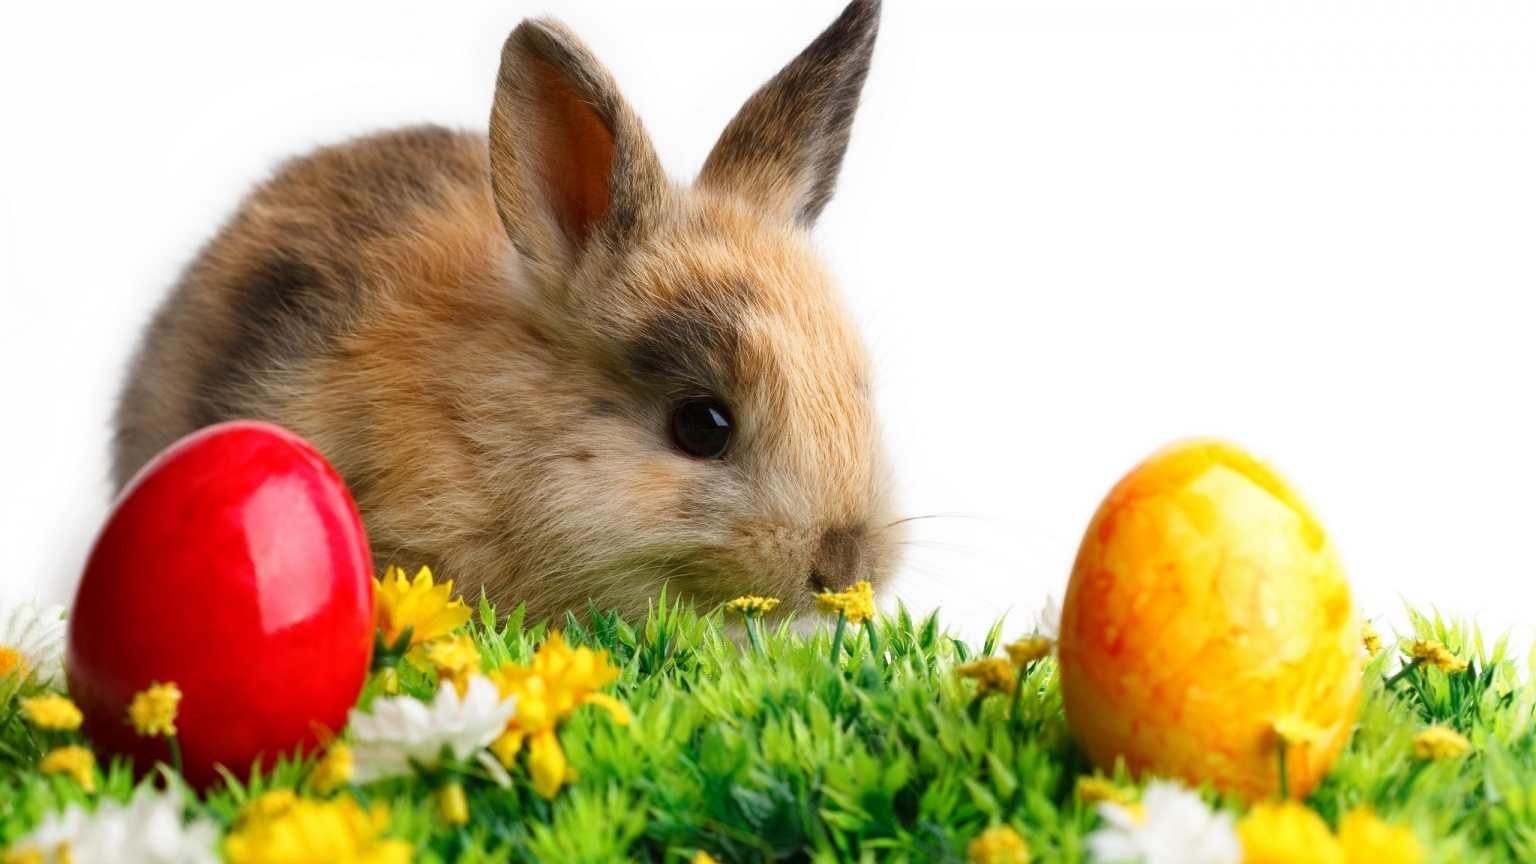 Cute Little Easter Rabbit for 1536 x 864 HDTV resolution